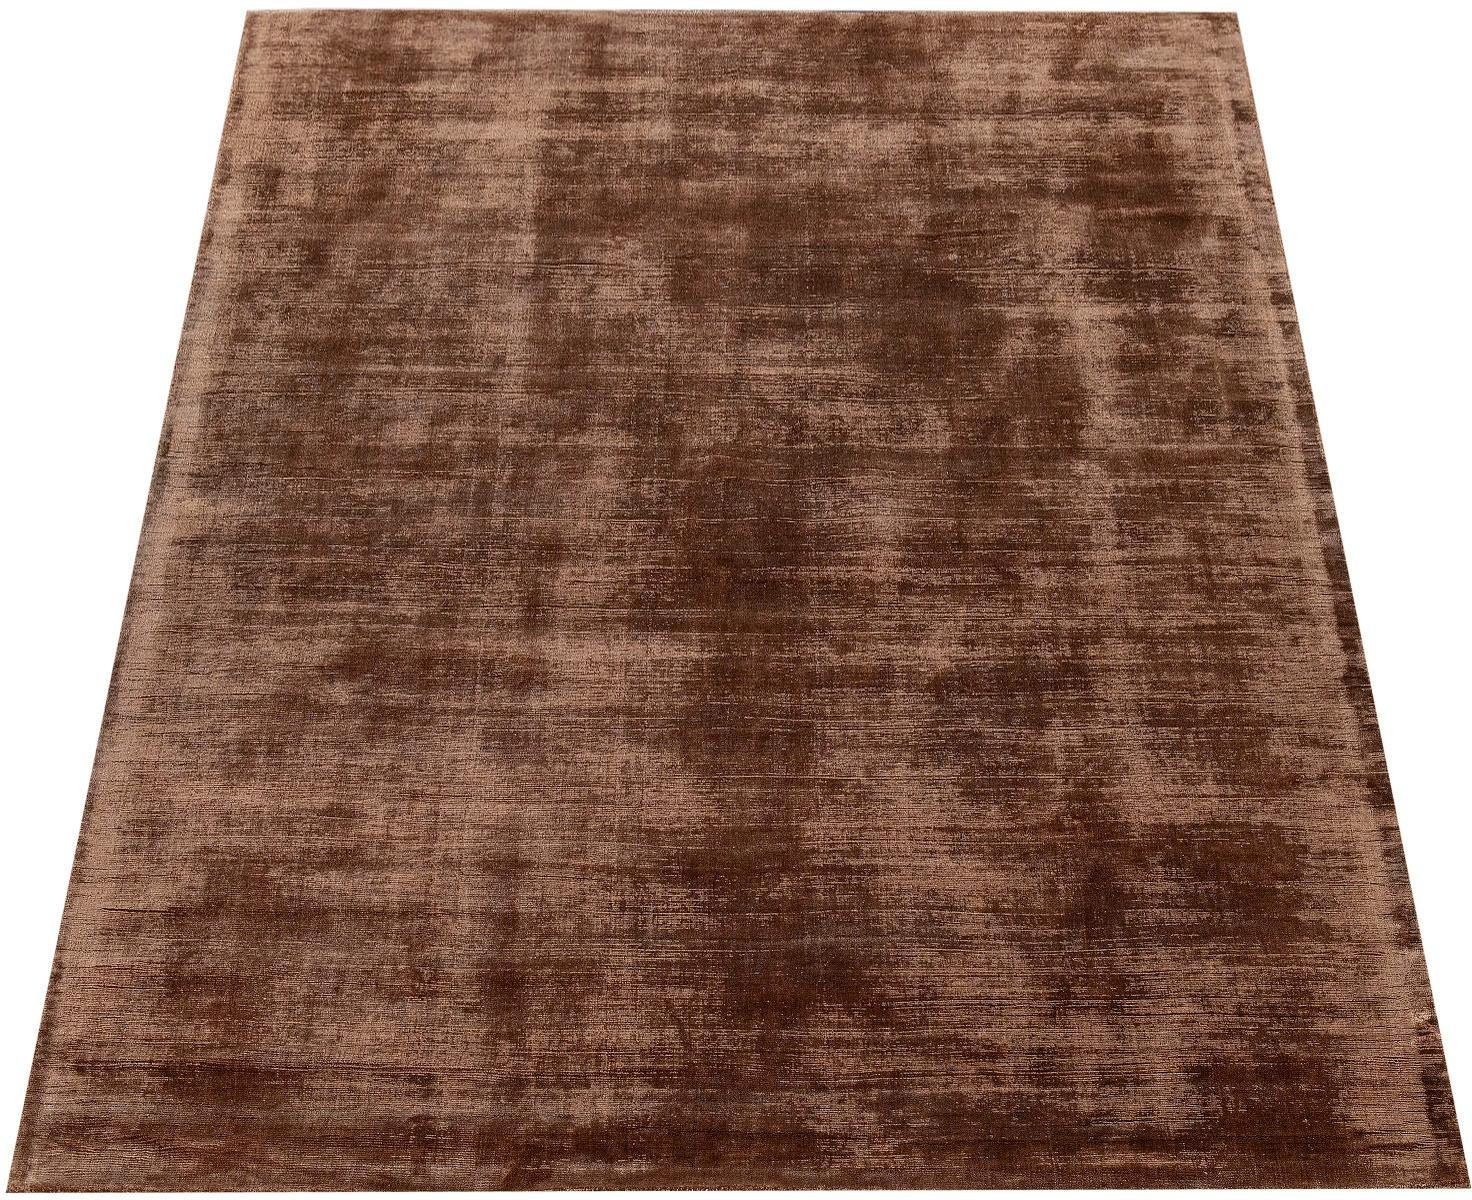 Paco Home Vloerkleed Glori 330 Handgeweven tapijt, laagpolig, 100% viscose, extra zacht met een lichte glans, ideaal voor in de woon- en slaapkamer